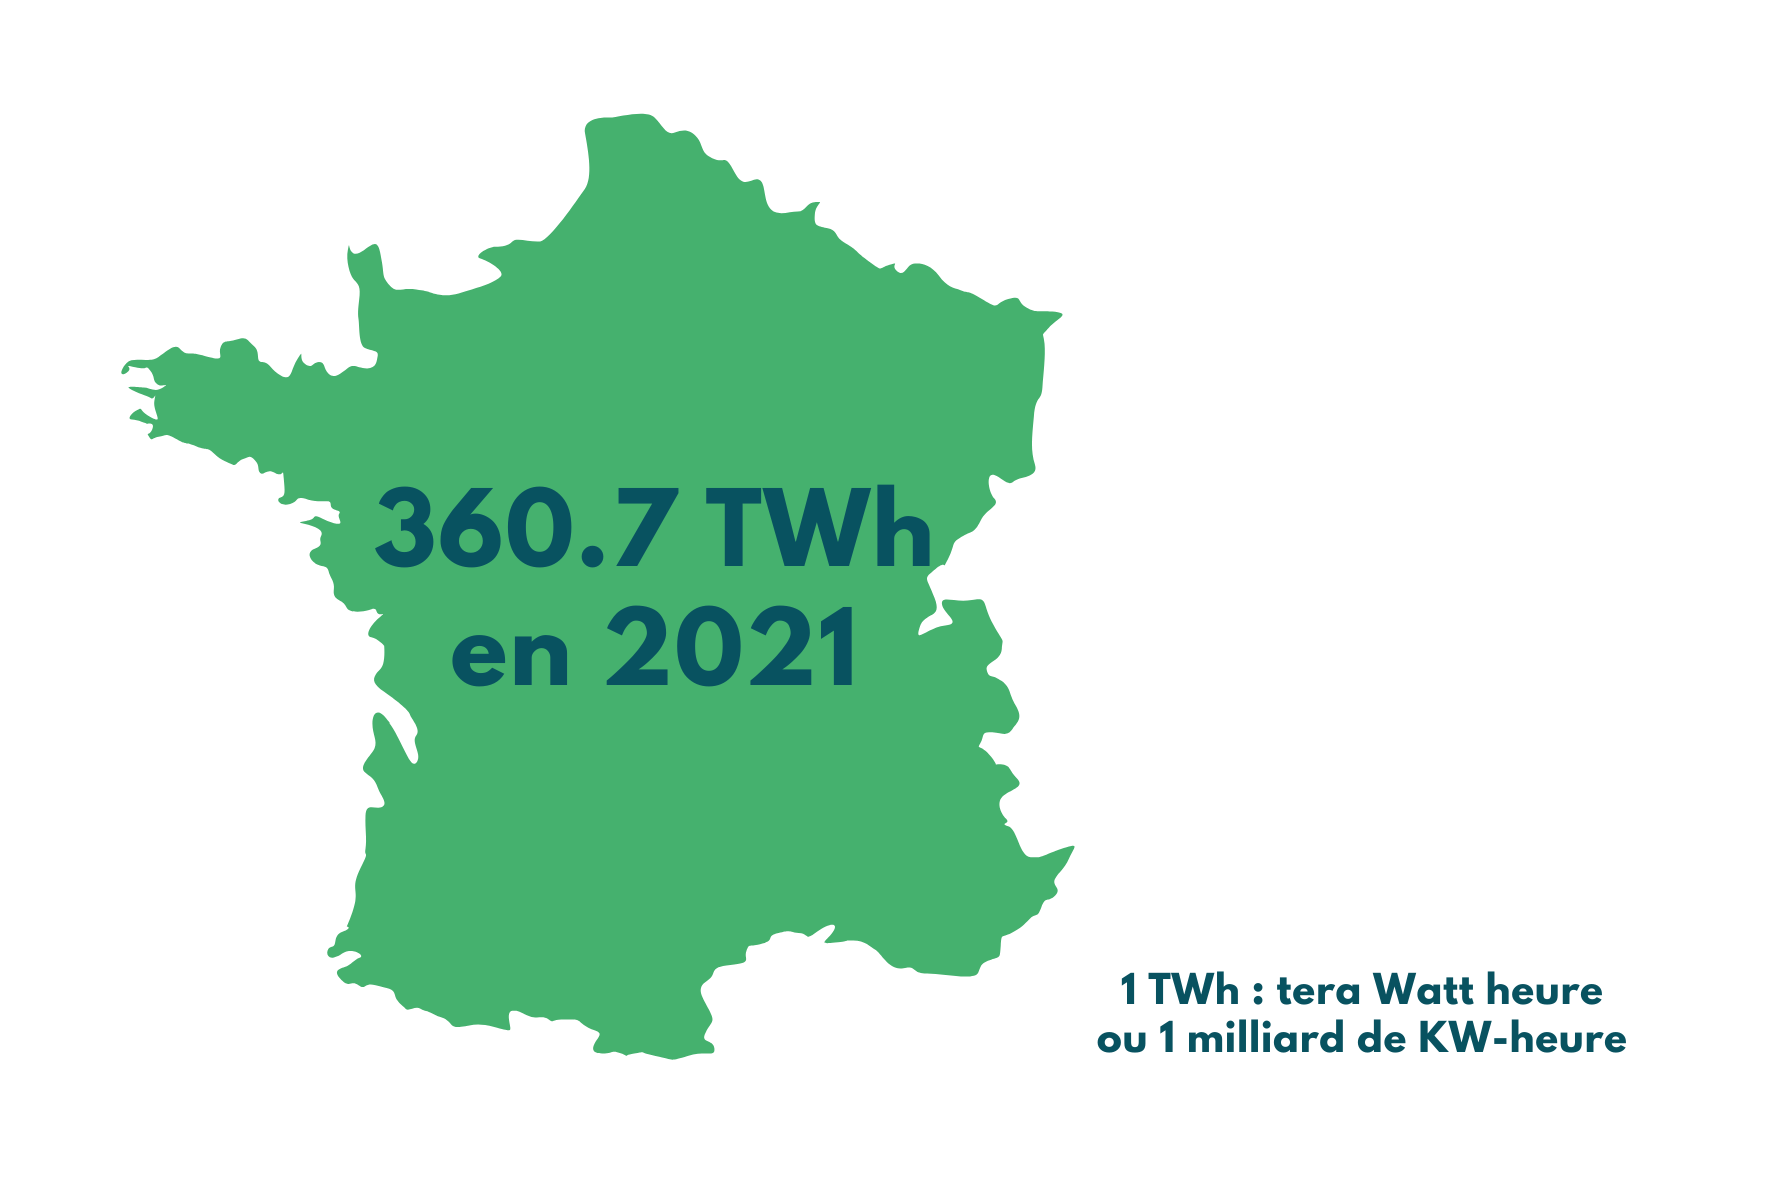 Production d'énergie nucléaire en 2021 en France